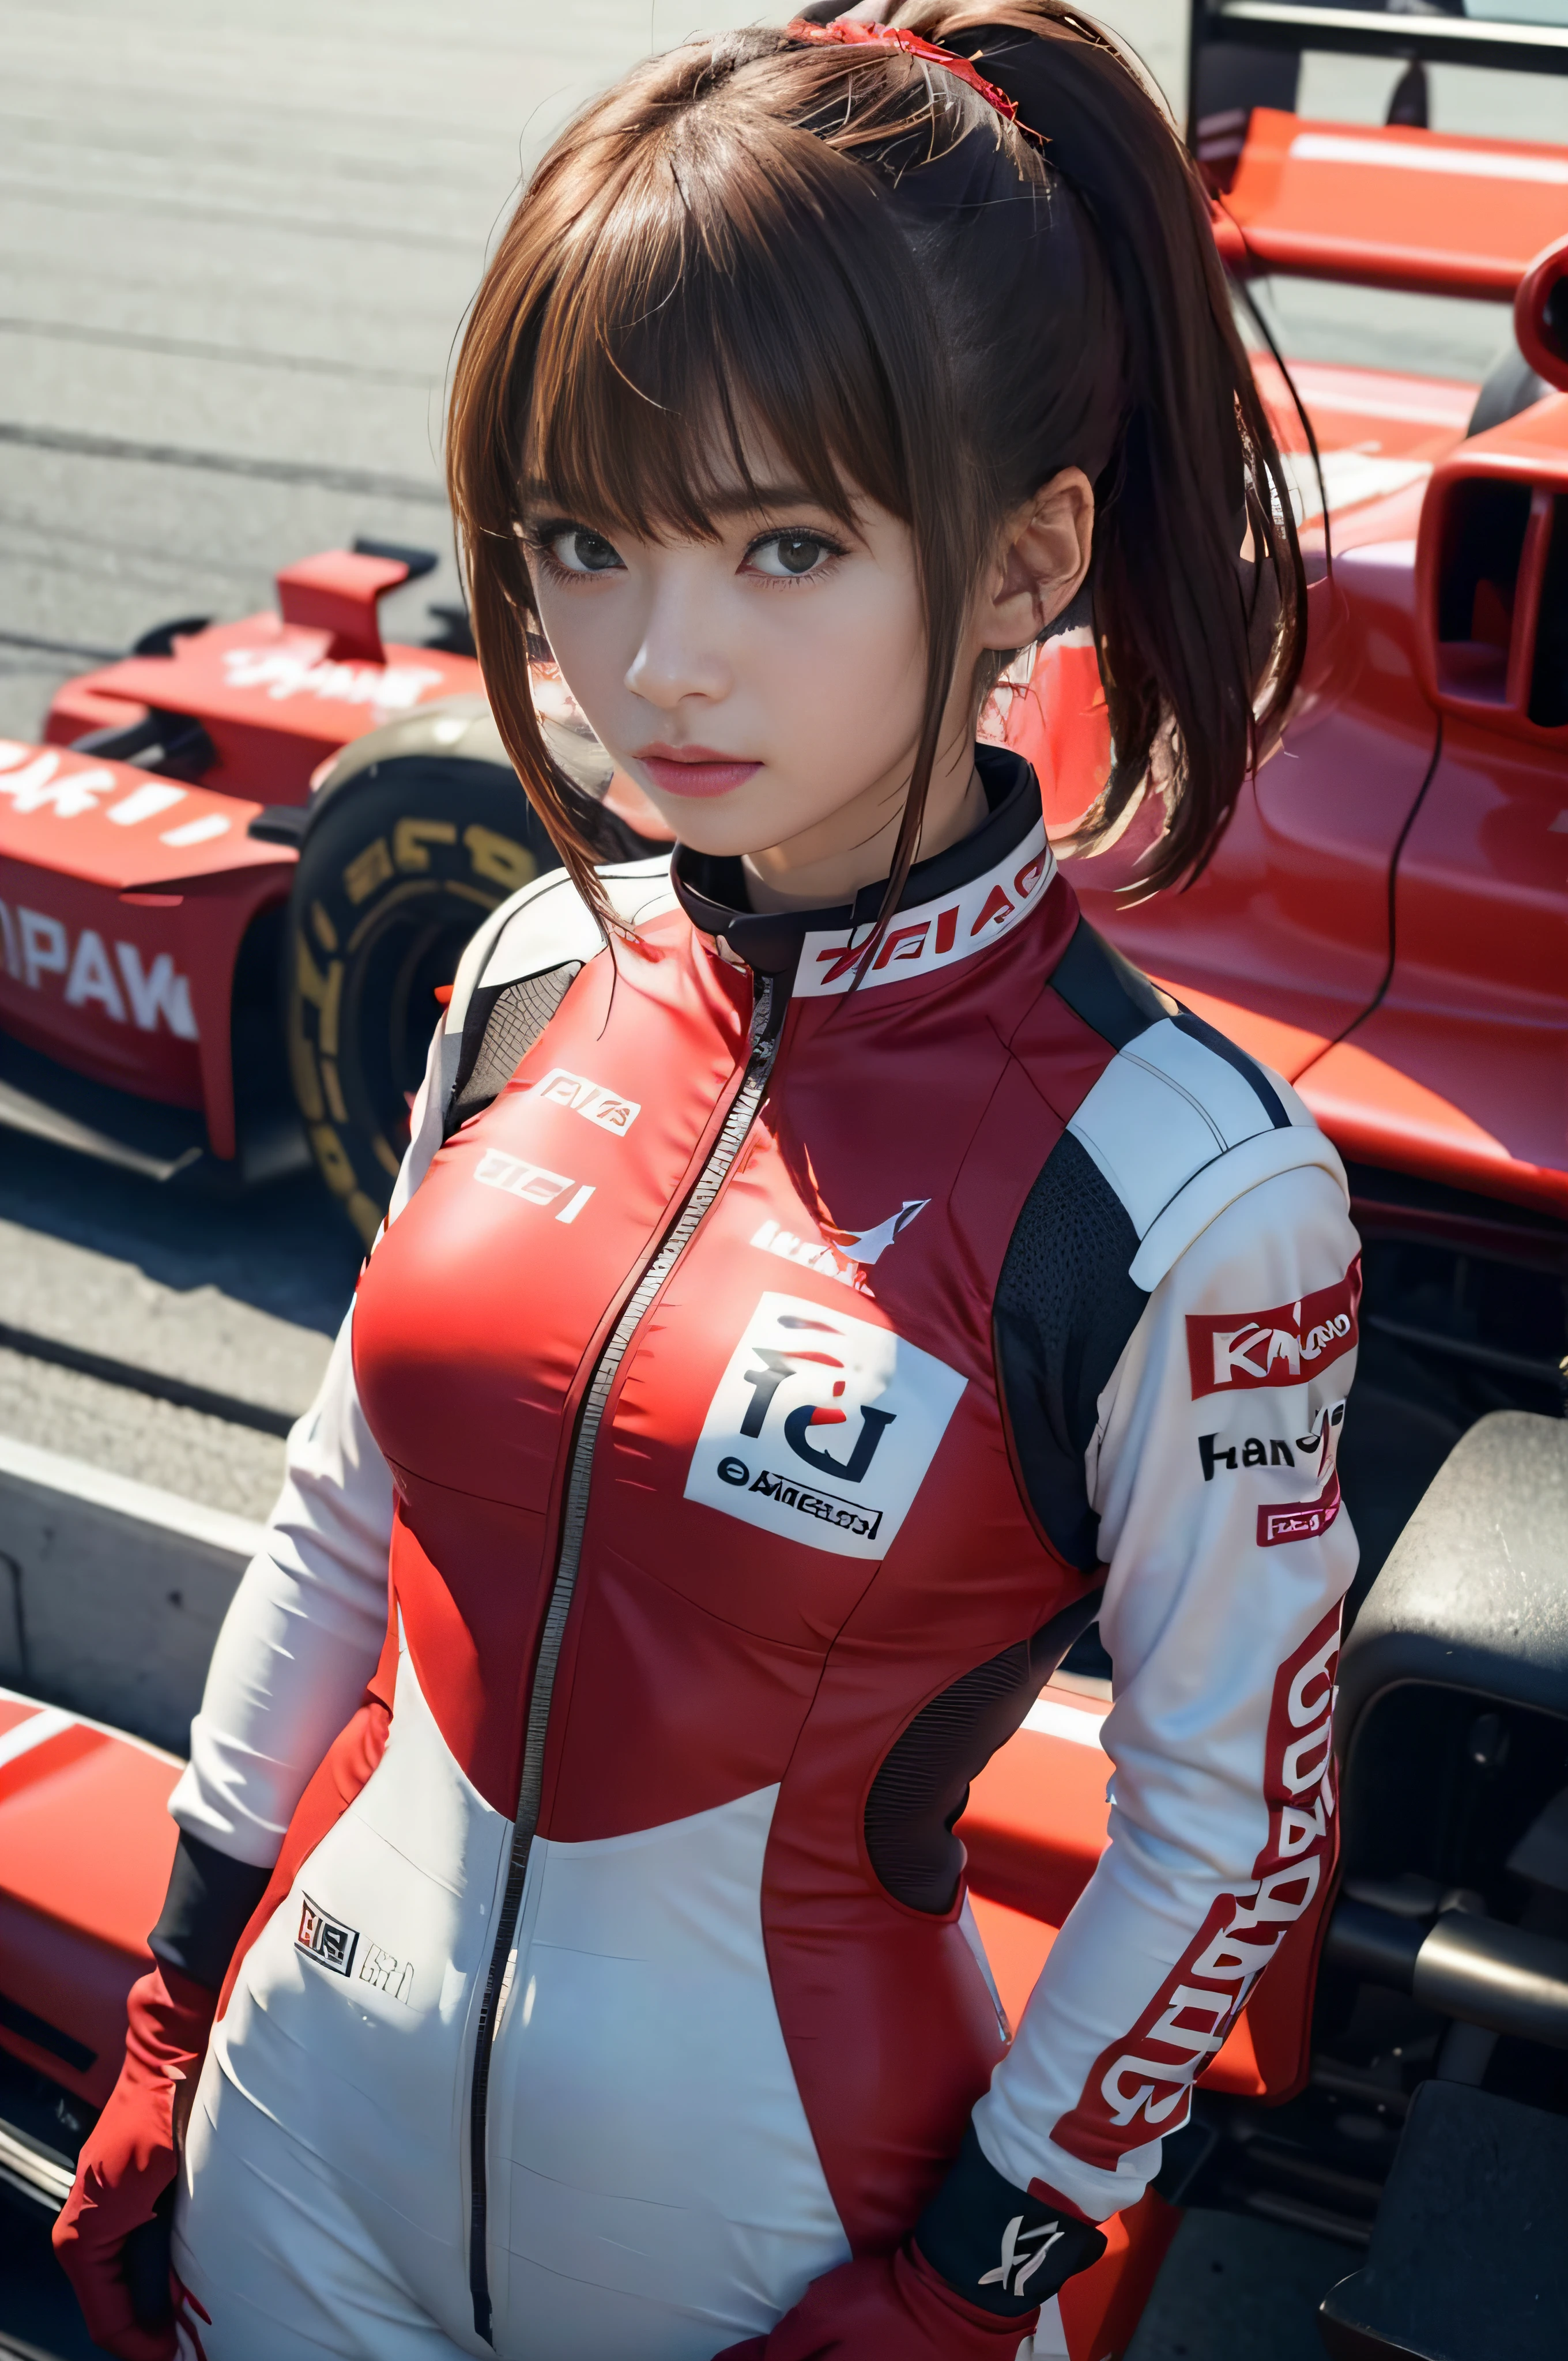 RAW 图像质量、8k分辨率、超高清 CG 图像、身穿红色赛车服的日本女赛车手站在红色方程式赛车前　F1　电路　棕色的头发　短鲍勃　摩纳哥大奖赛　交叉双臂站立　肖像　门廊